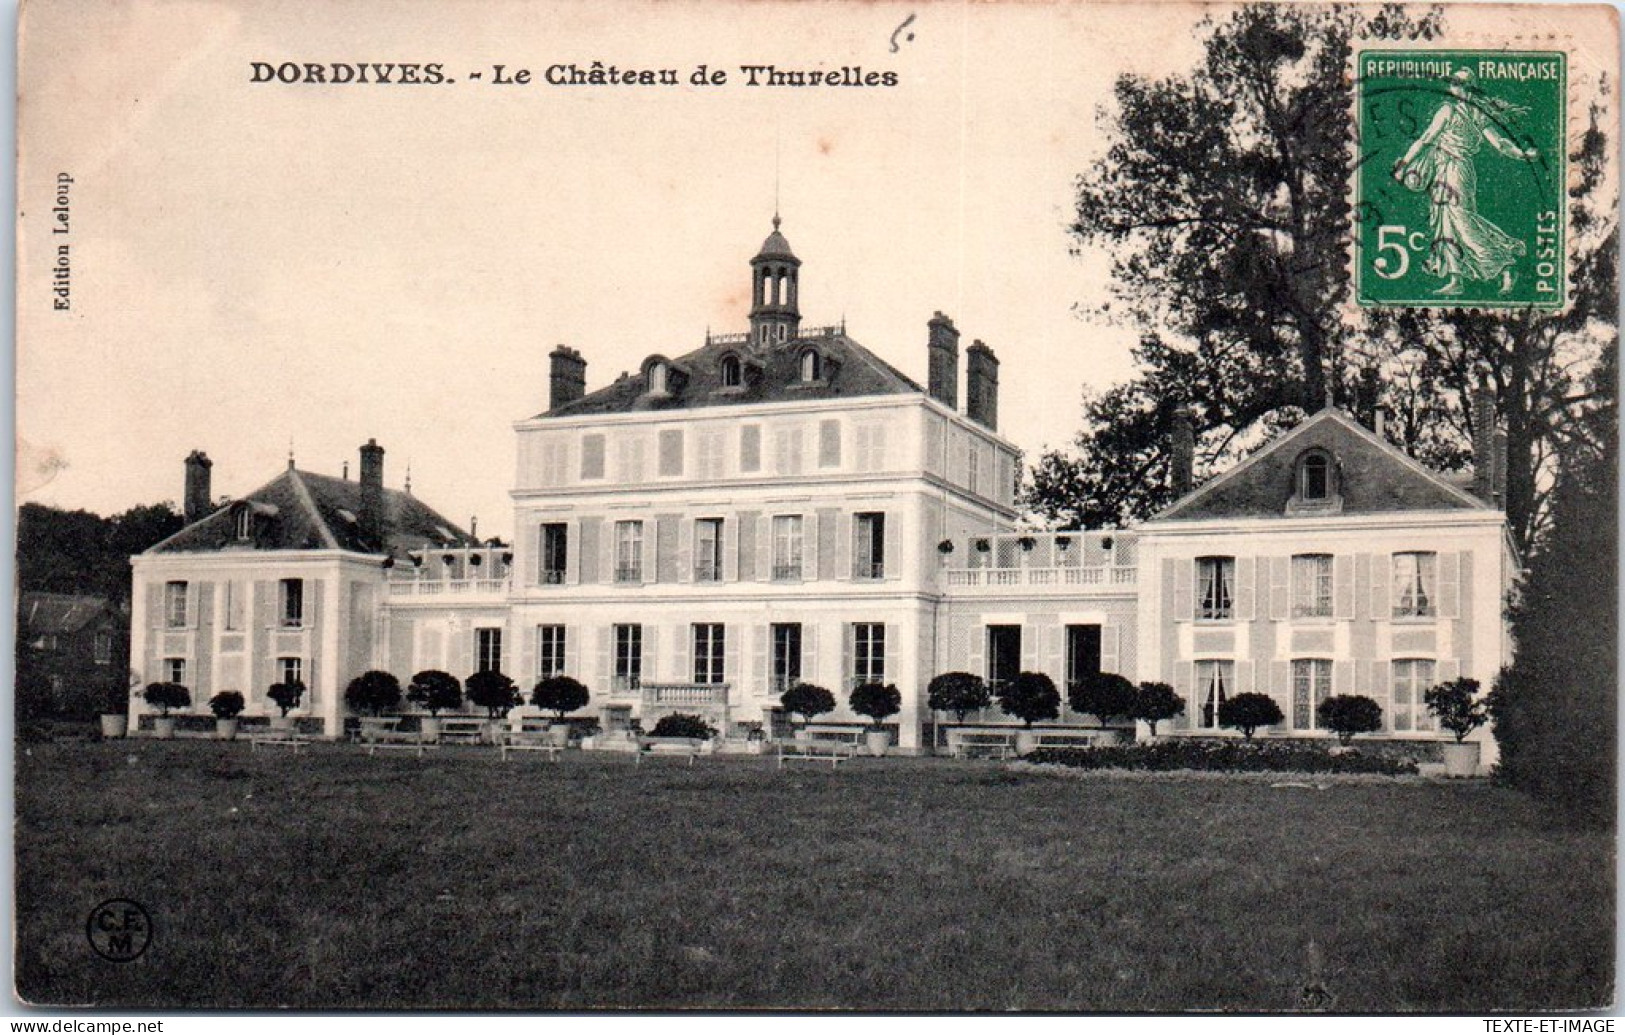 45 DORDIVES - Le CHATEAUde Thurelles. - Dordives